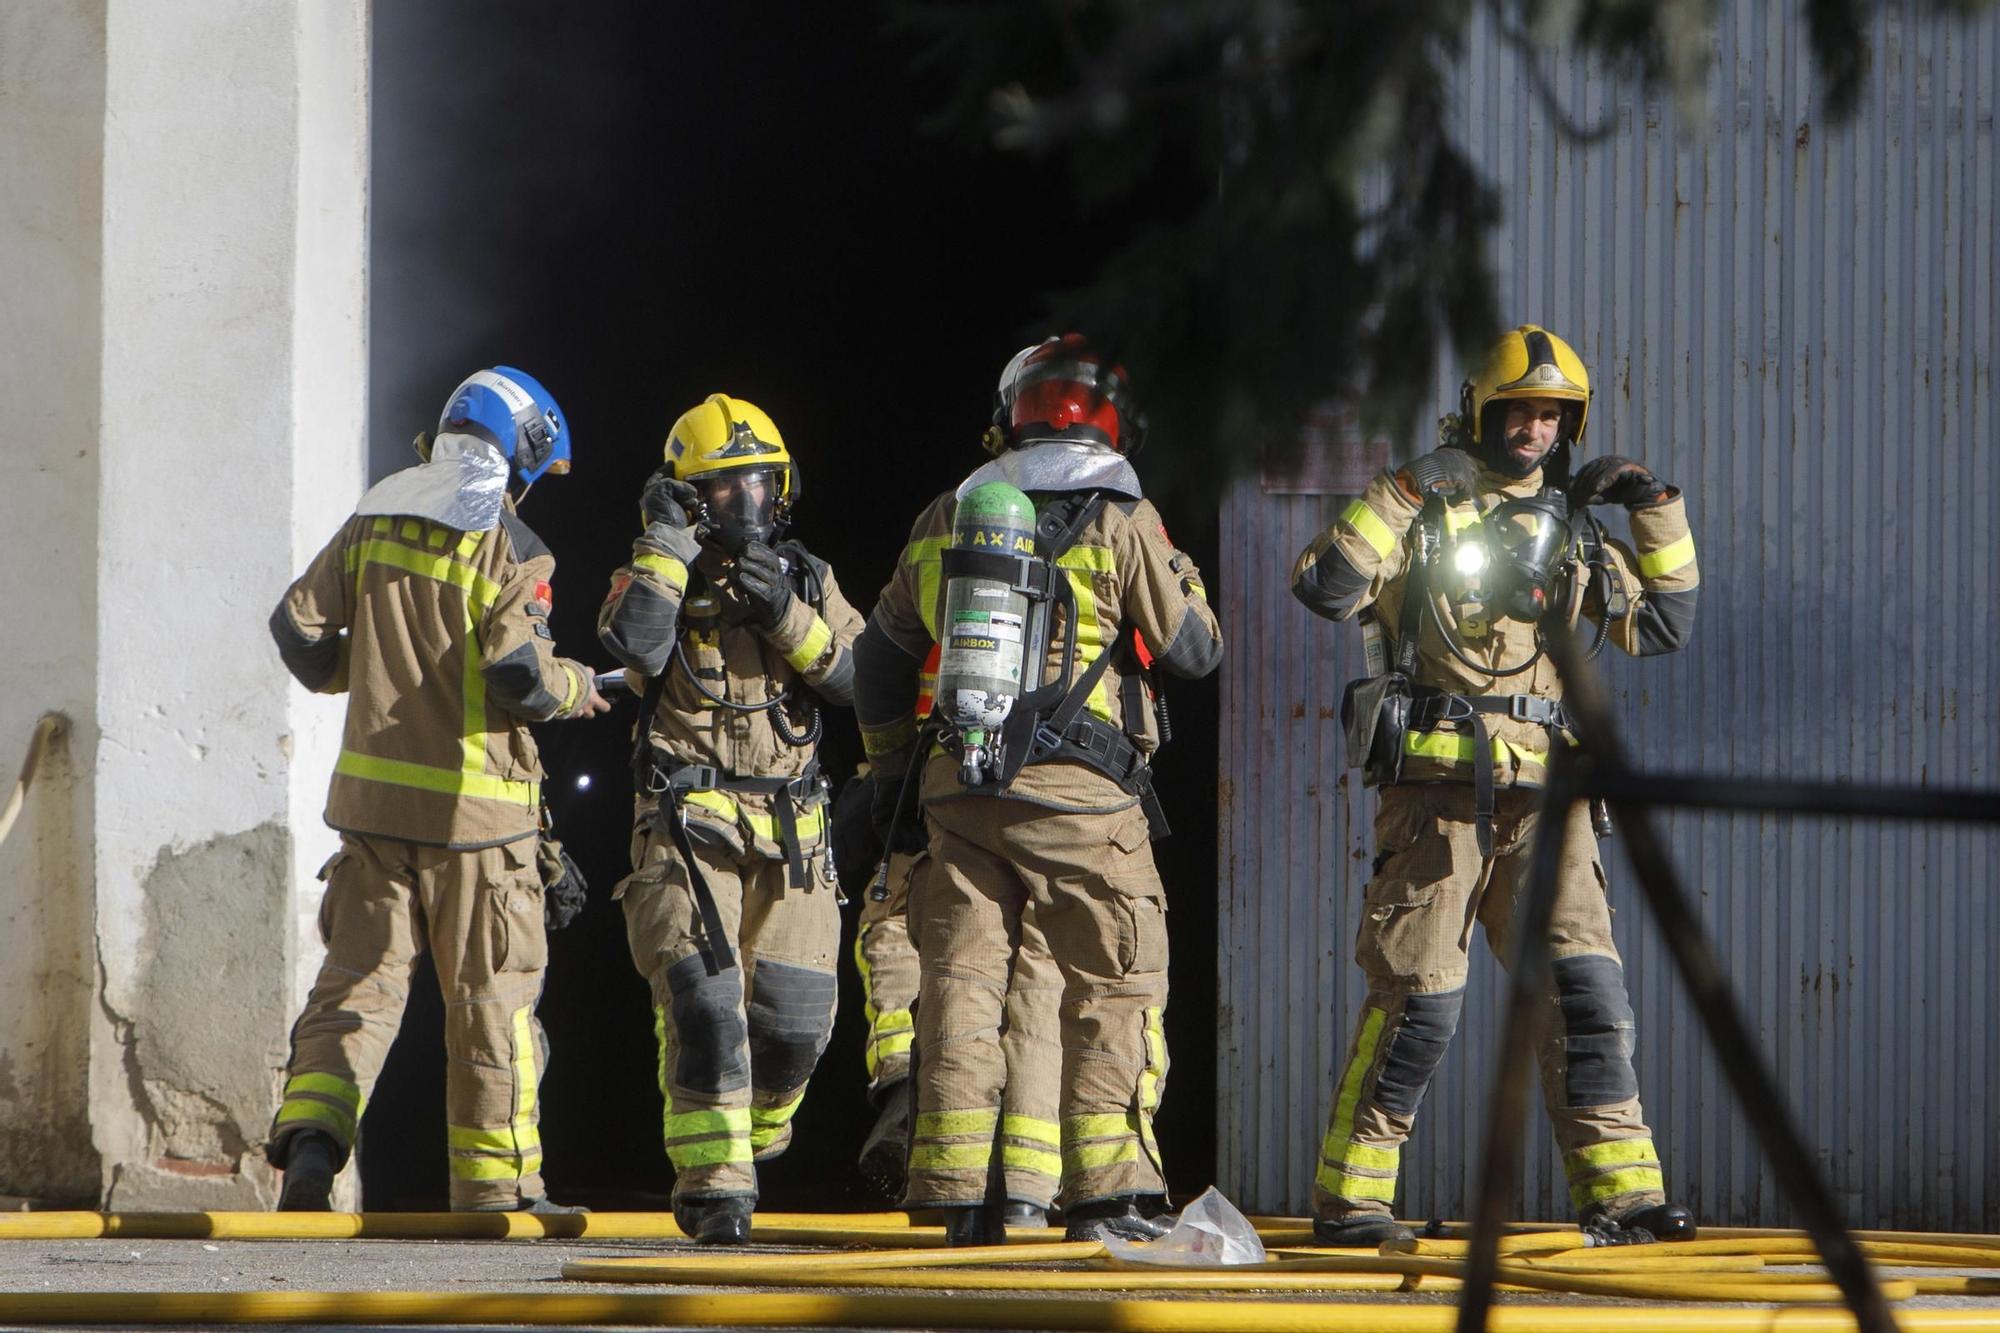 Aparatós incendi en una nau industrial a Vilobí